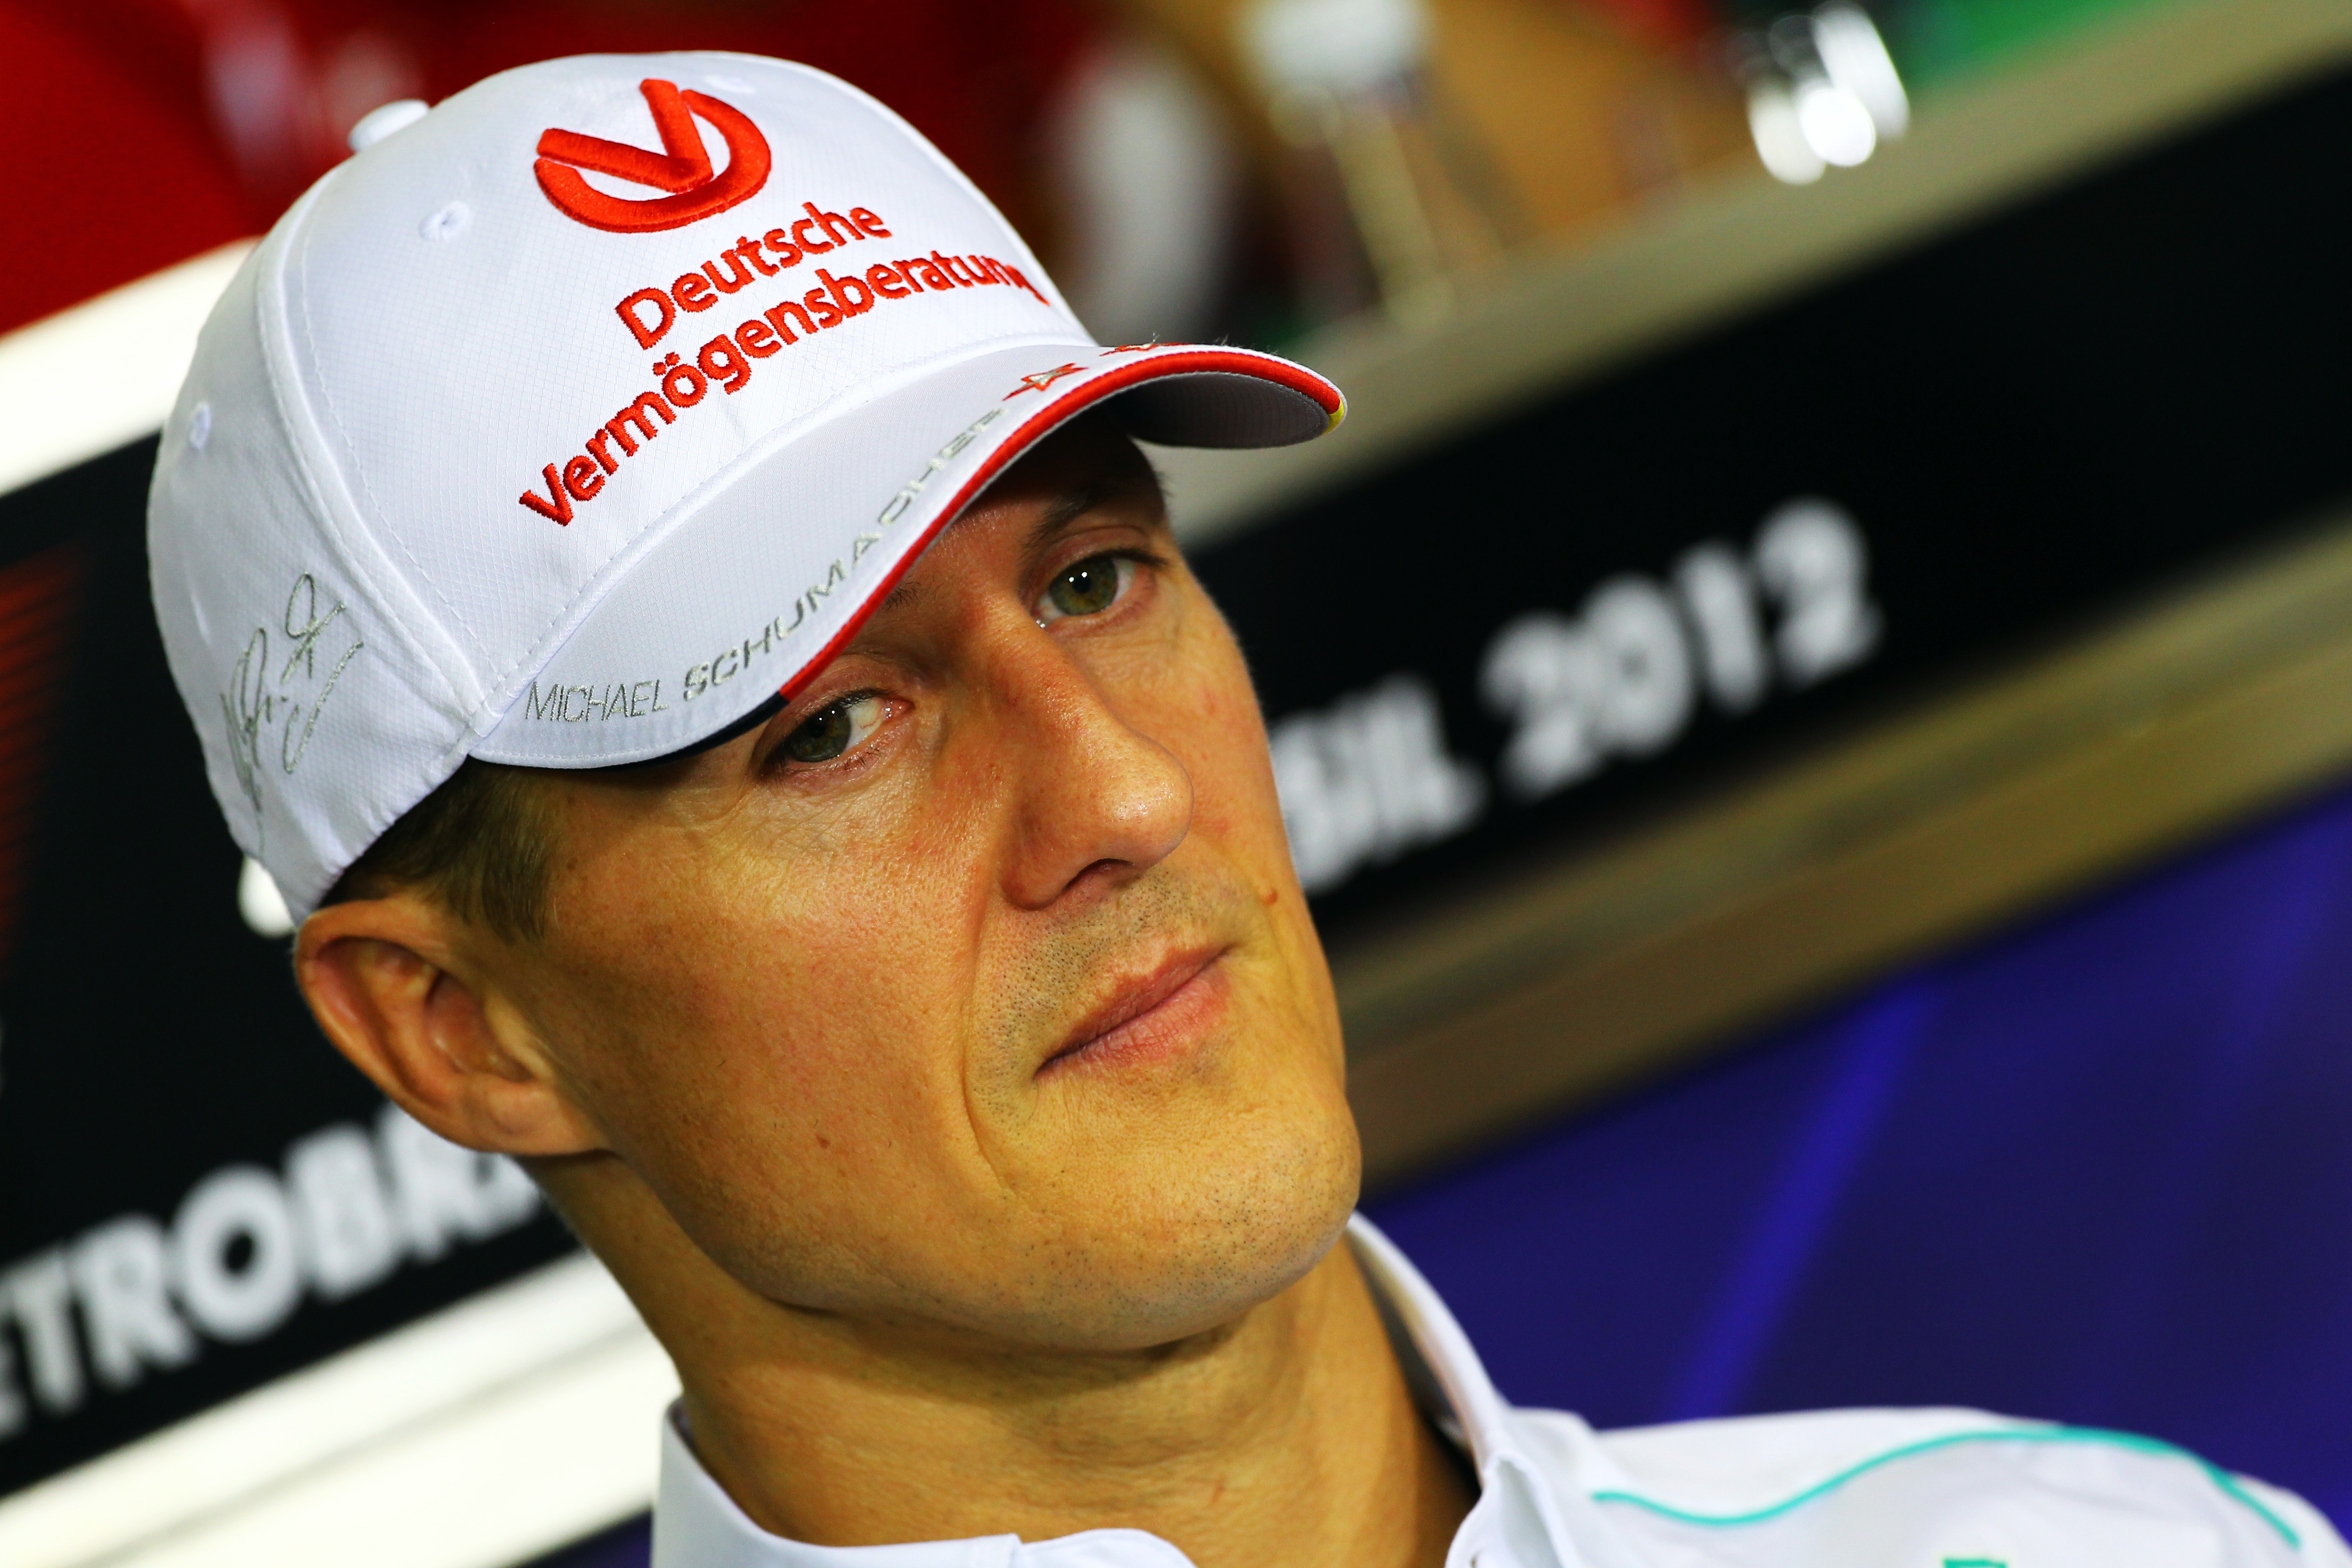 Snelheid geen belangrijke factor bij ongeluk Schumacher